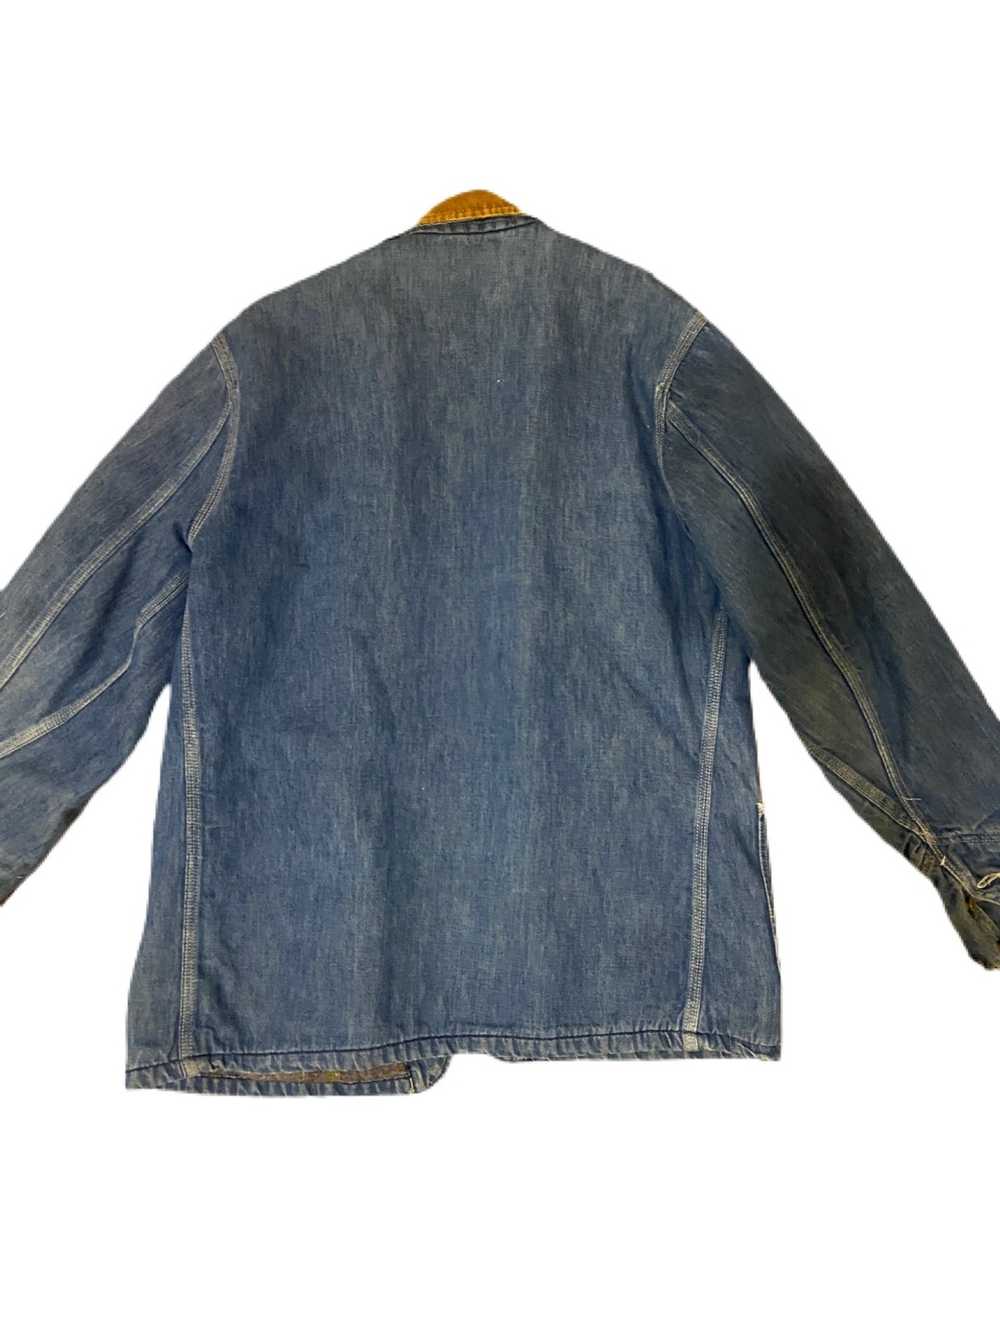 Vintage Vintage Denim Chore Jacket - Gem